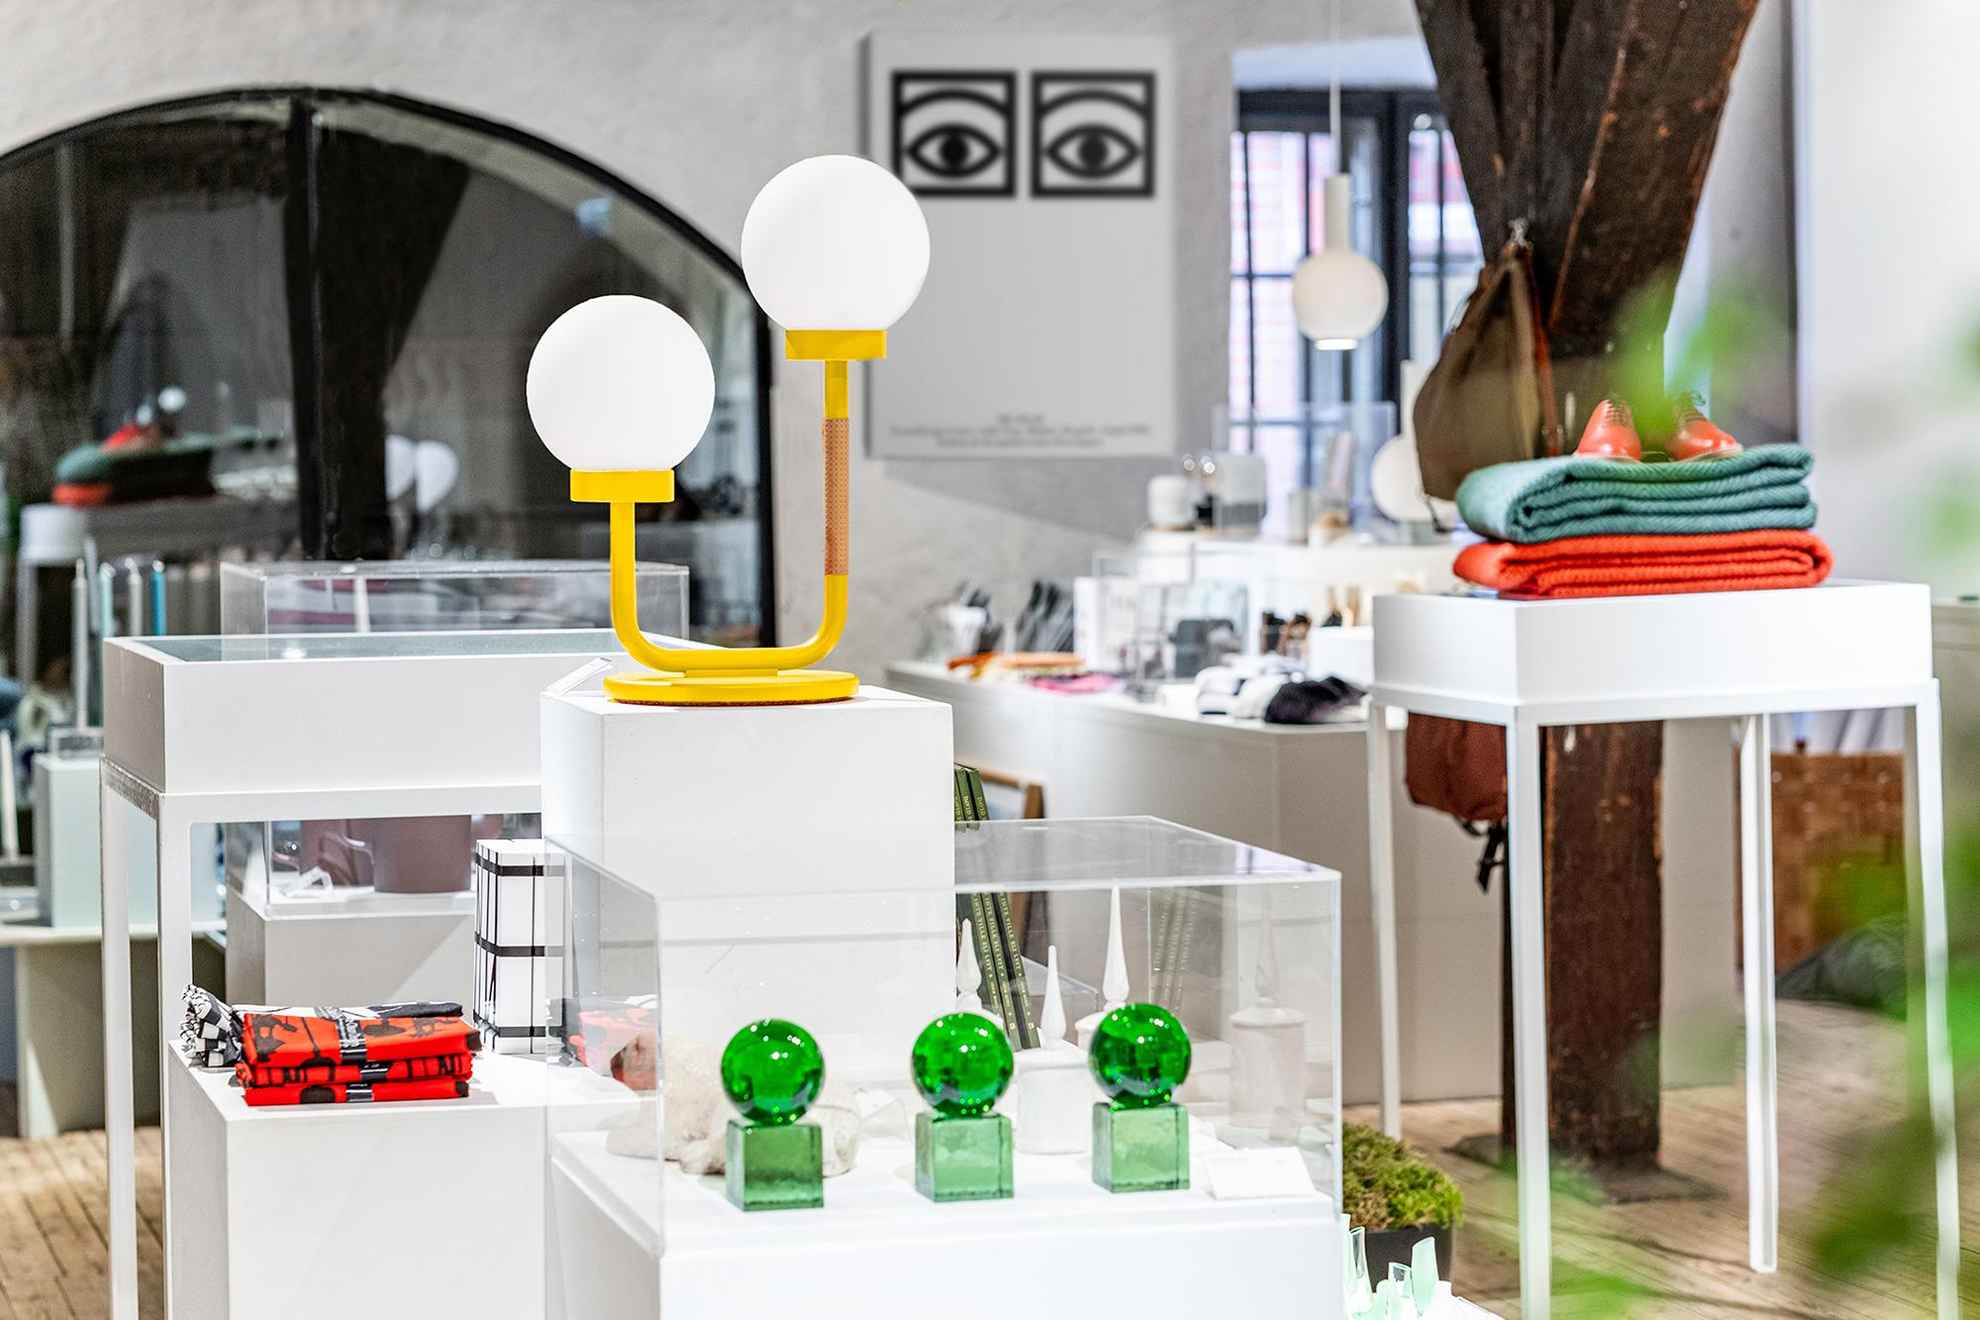 De winkel van Form/Design center. Er zijn volop designobjecten te zien, zoals lampen, glaskunst en andere voorwerpen.